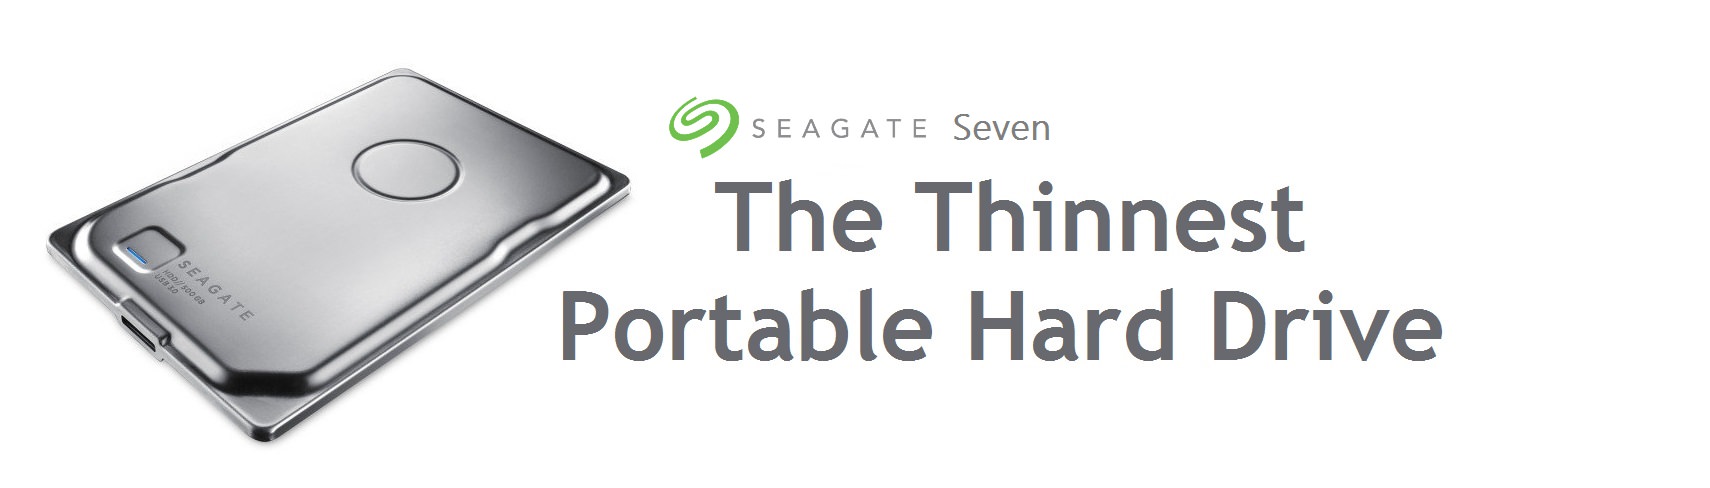 seagate seven title